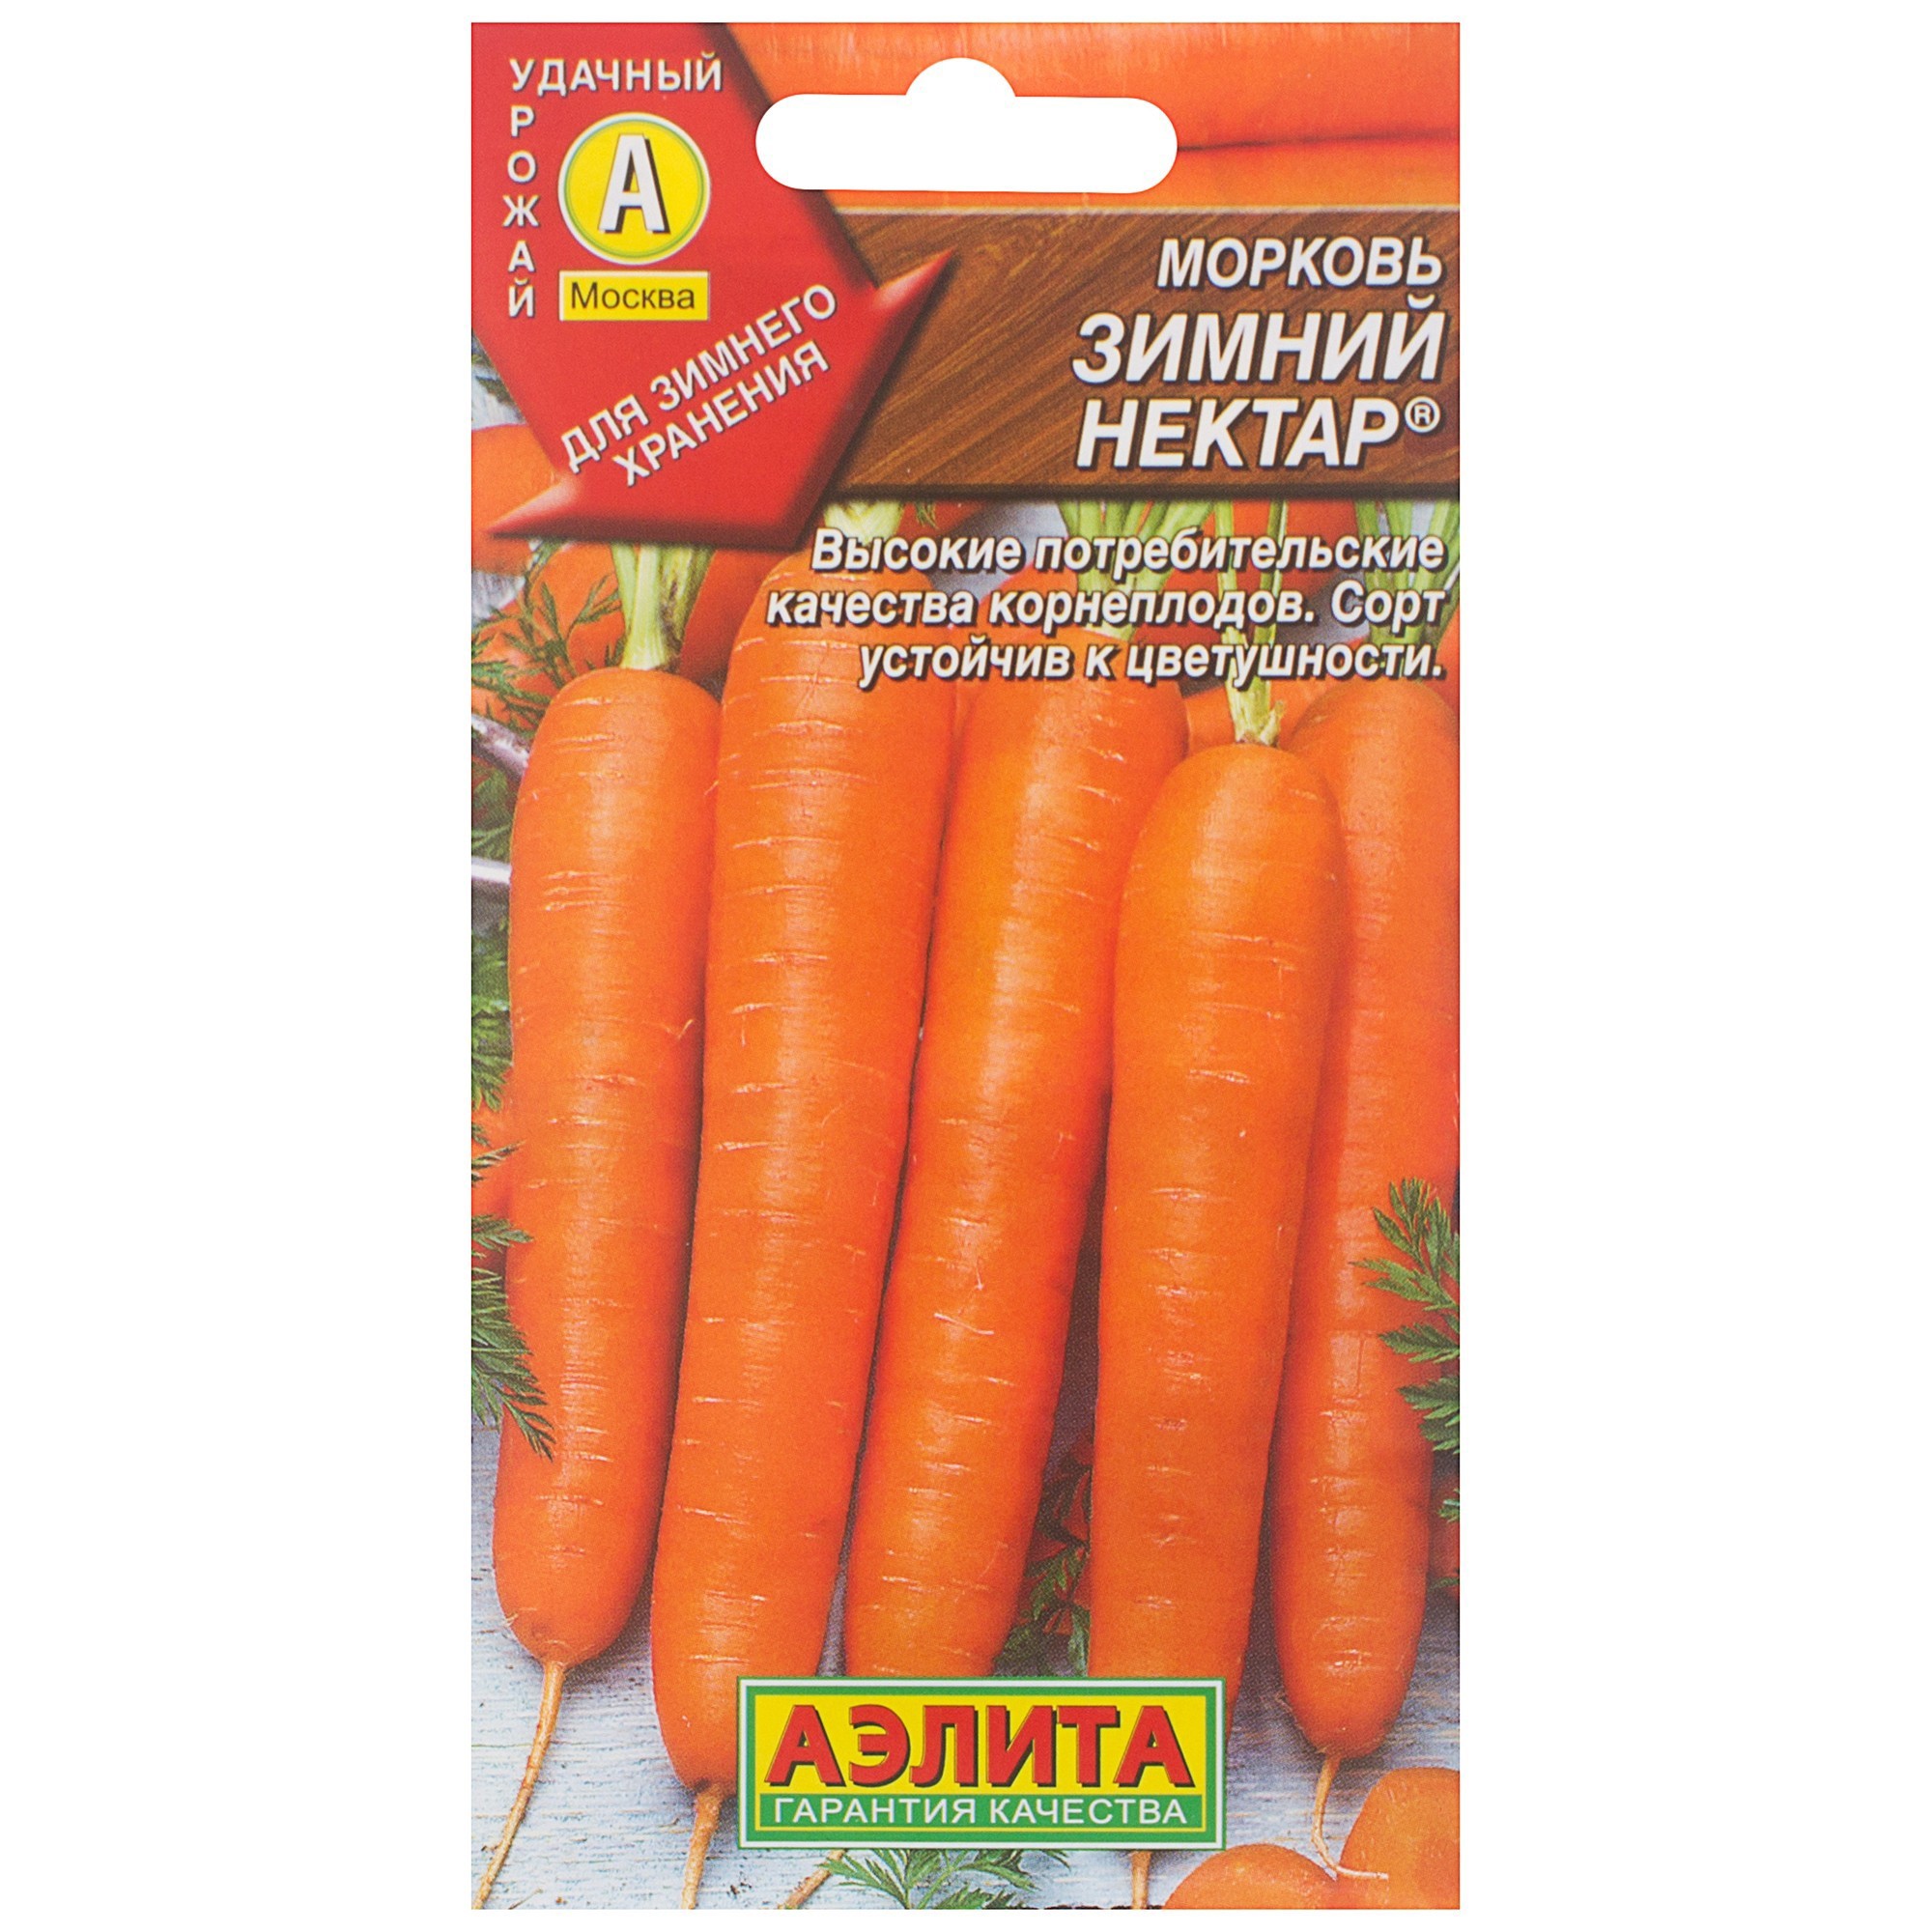 Морковь нектар. Морковь зимний нектар 2гр /10.